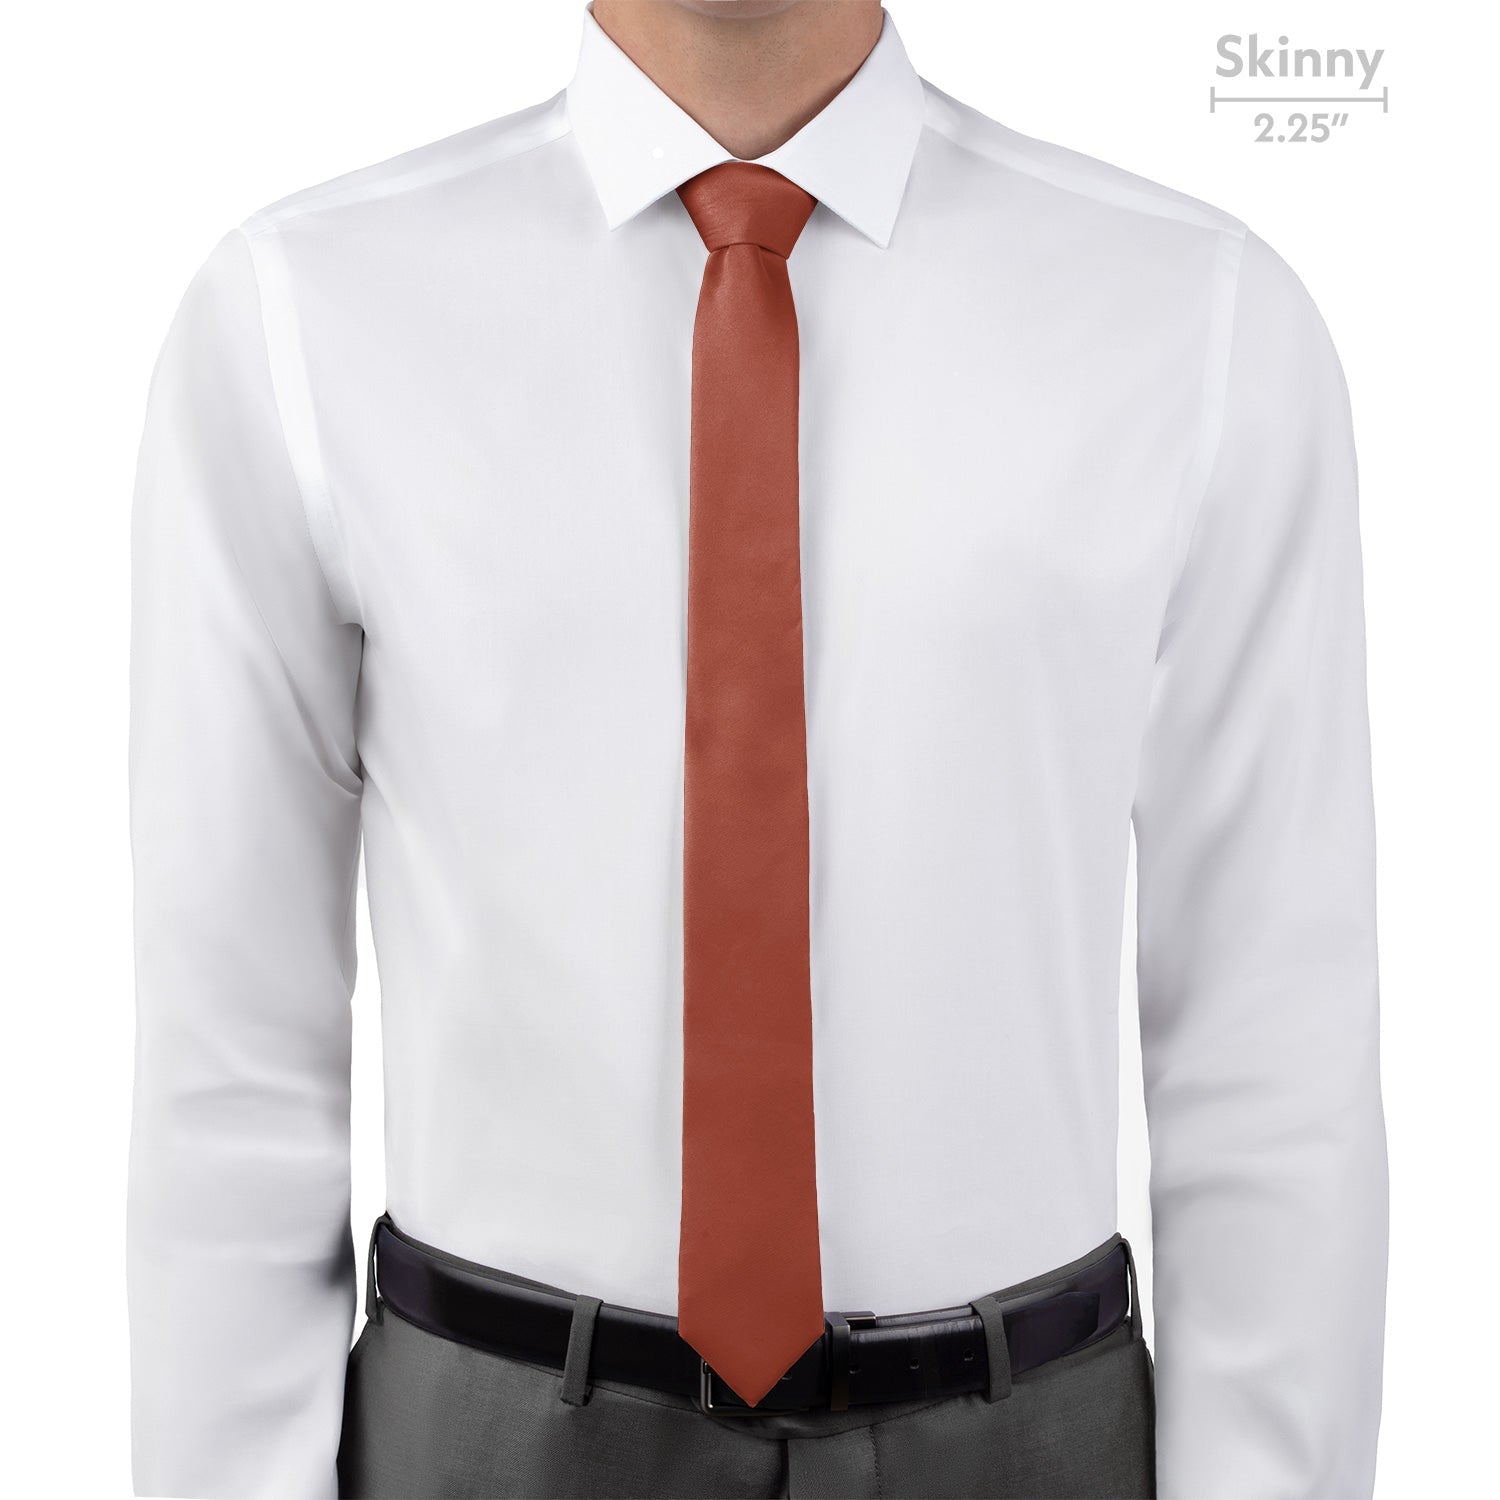 Azazie Auburn Necktie - Skinny - Knotty Tie Co.